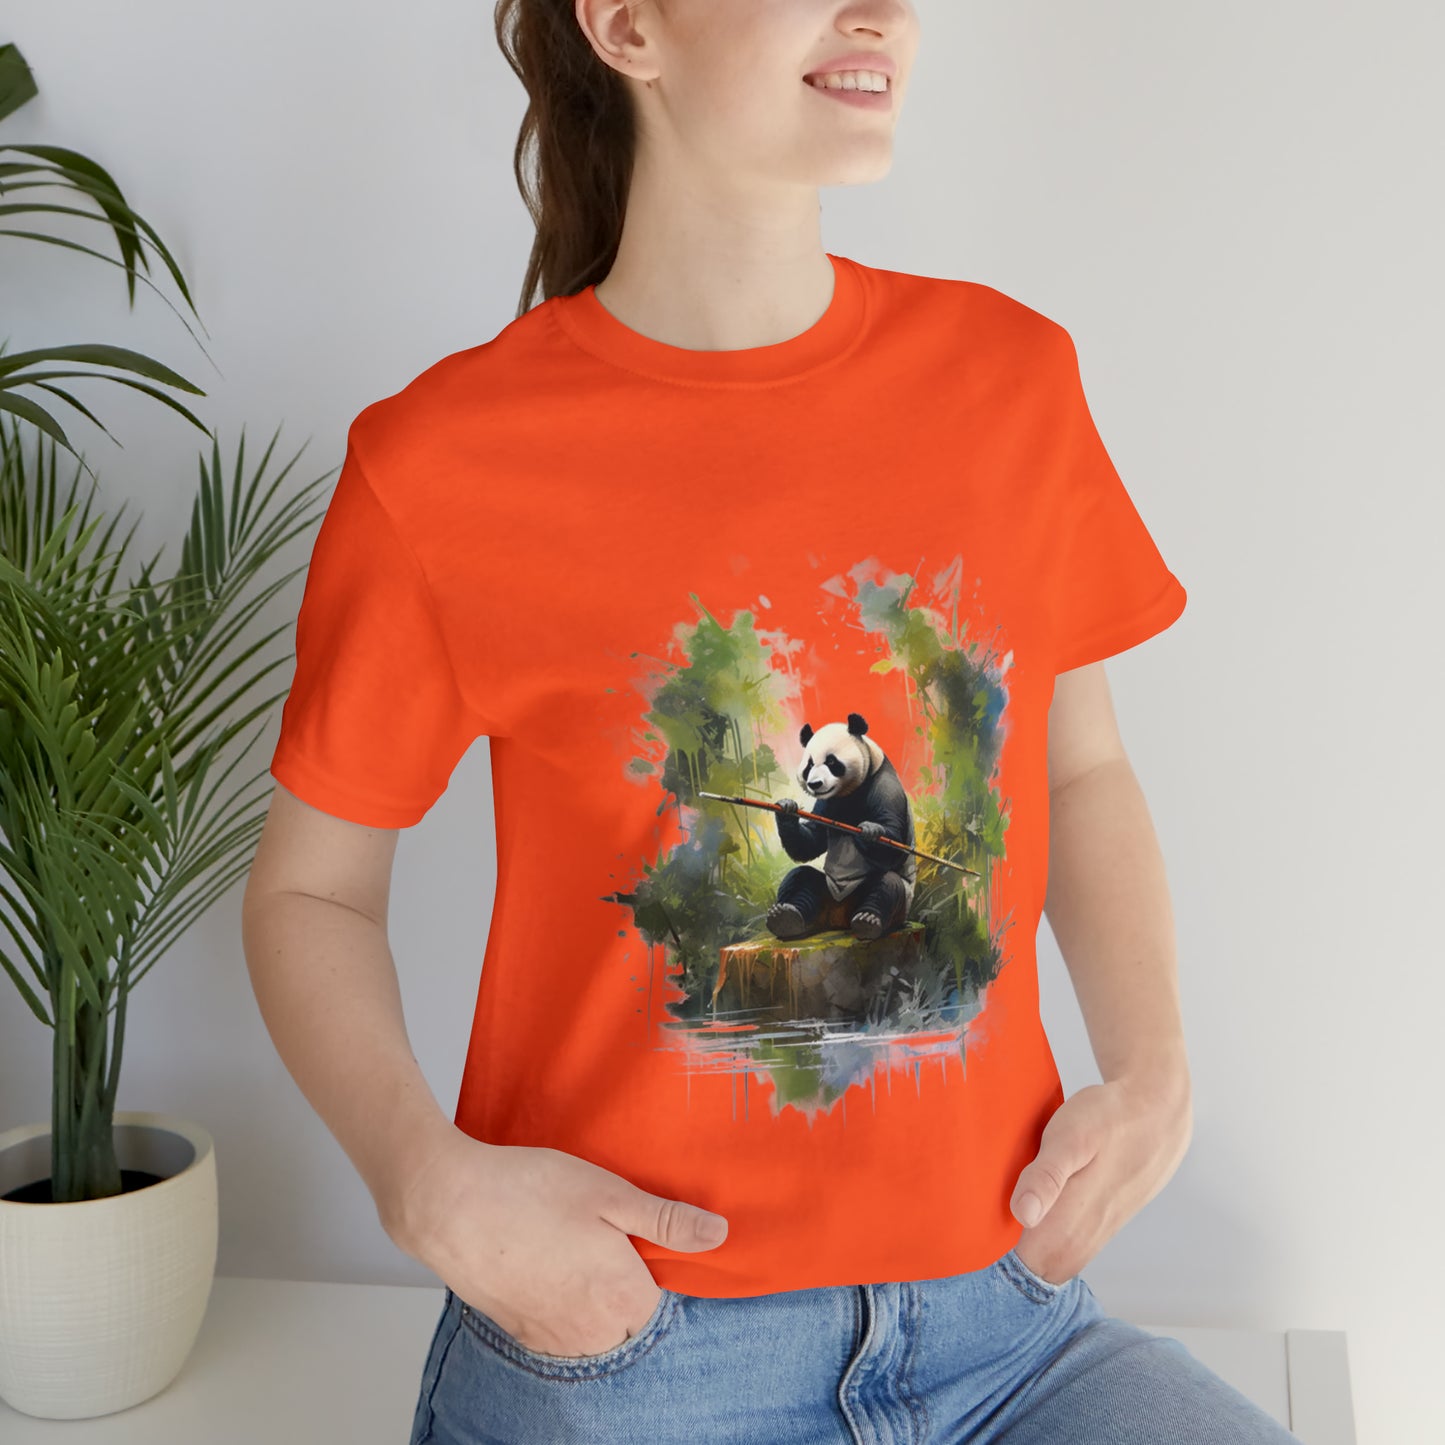 Panda-monium! Unisex Jersey Short Sleeve Tee